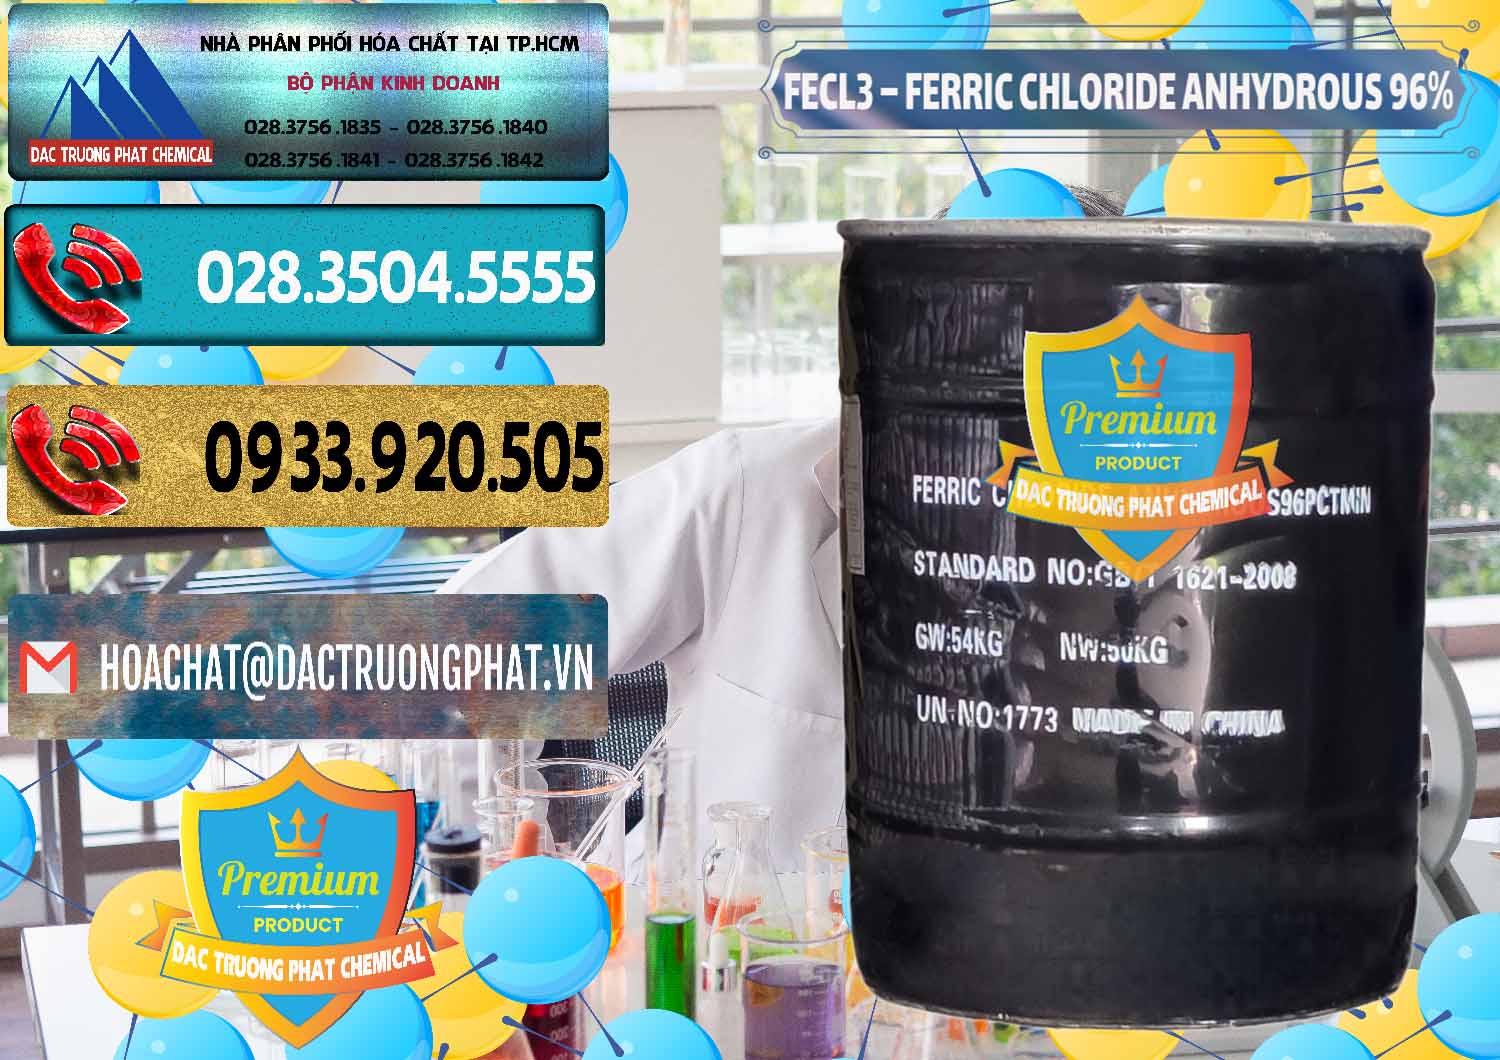 Công ty cung cấp _ bán FECL3 – Ferric Chloride Anhydrous 96% Trung Quốc China - 0065 - Nơi phân phối và cung ứng hóa chất tại TP.HCM - hoachatdetnhuom.com